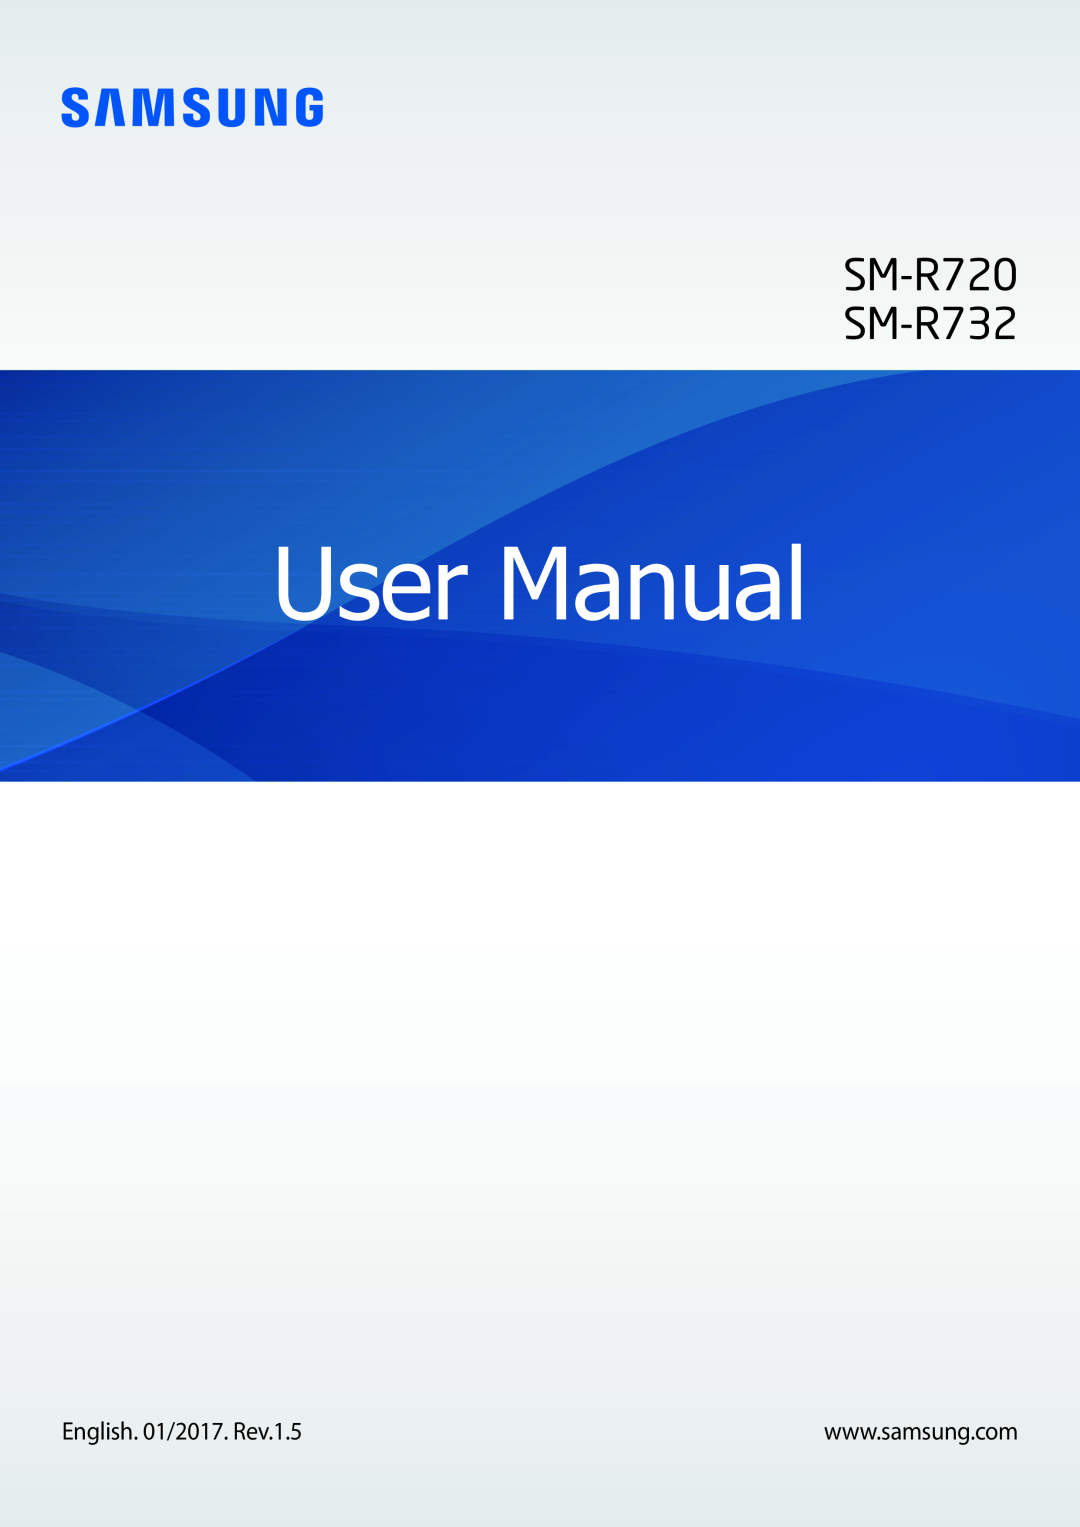 Samsung SM-R7320WDADBT, SM-R7320ZKADBT, SM-R7200ZKADBT, SM-R7200ZWADBT, SM-R7320ZDADBT manual User Manual, SM-R720 SM-R732 